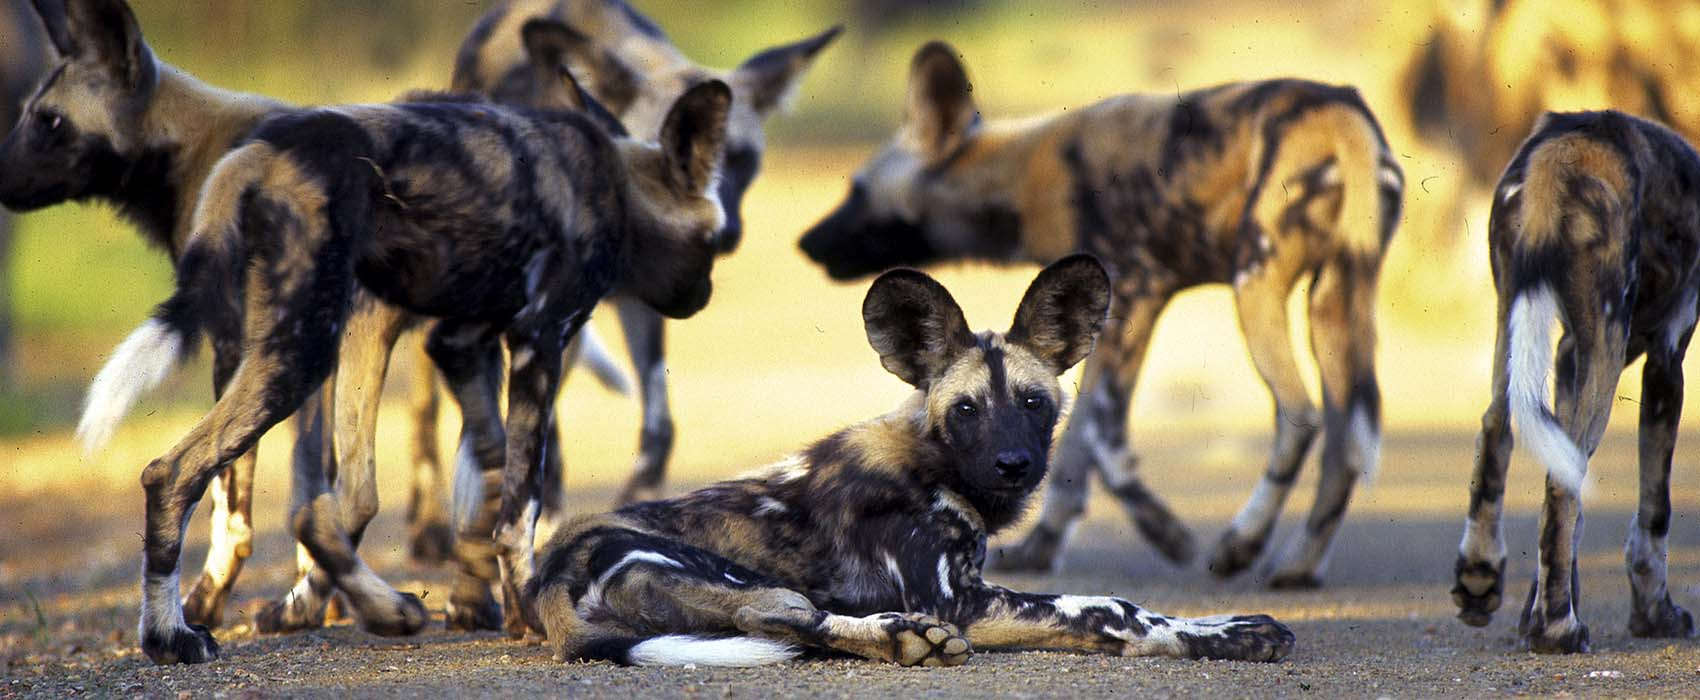 African Kruger National Park Safari dogs